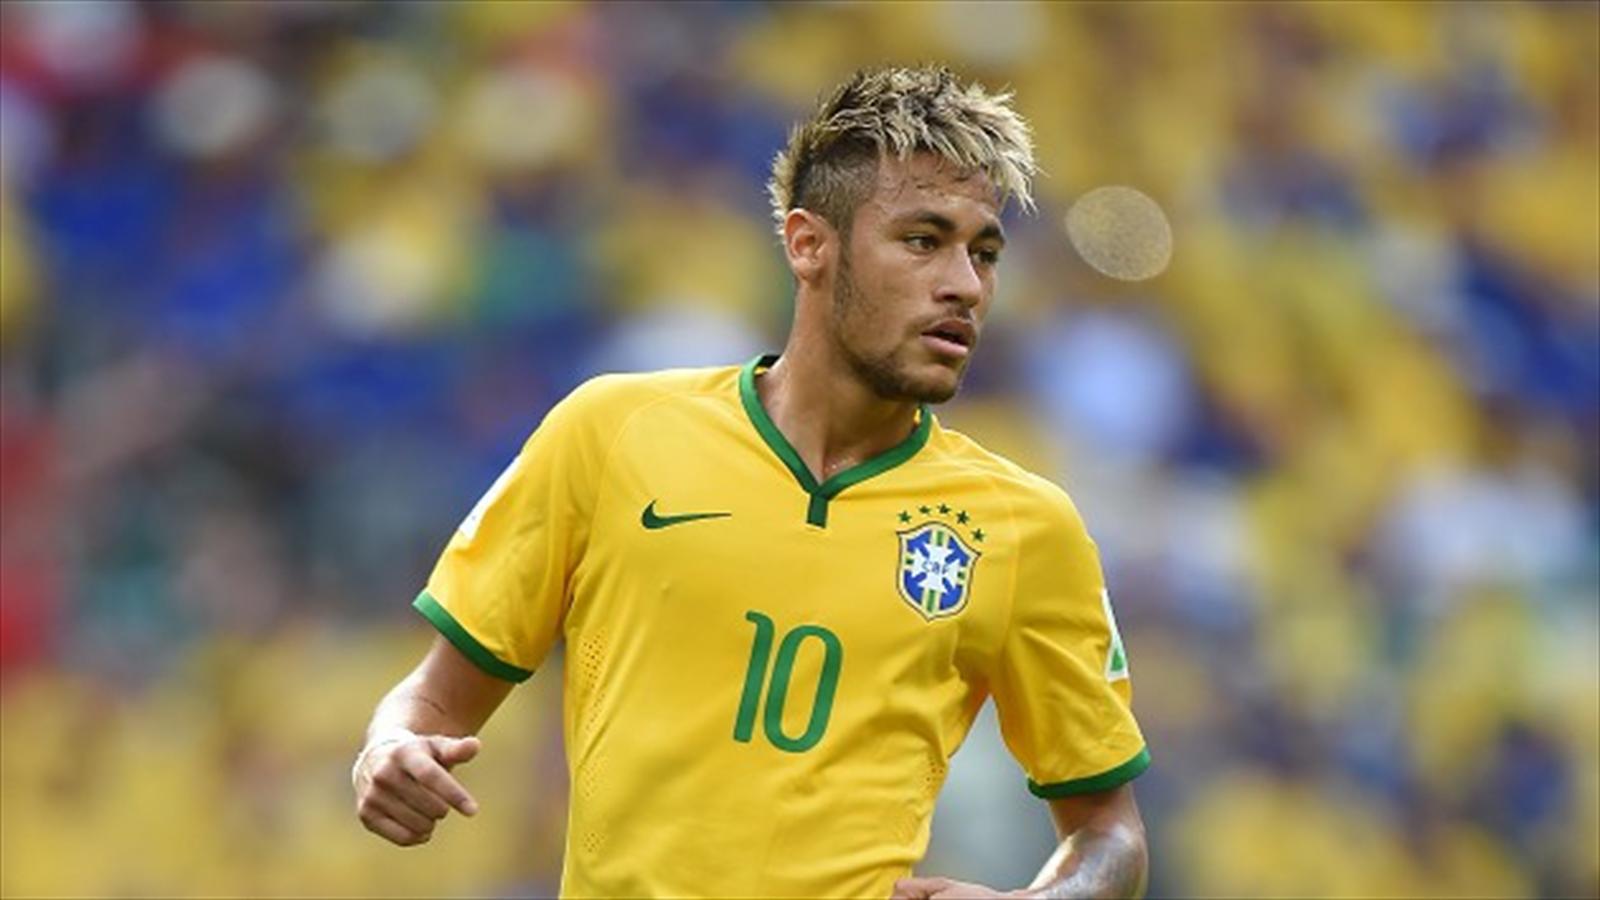 Neymar JR. Neymar brazil, Neymar, Neymar jr